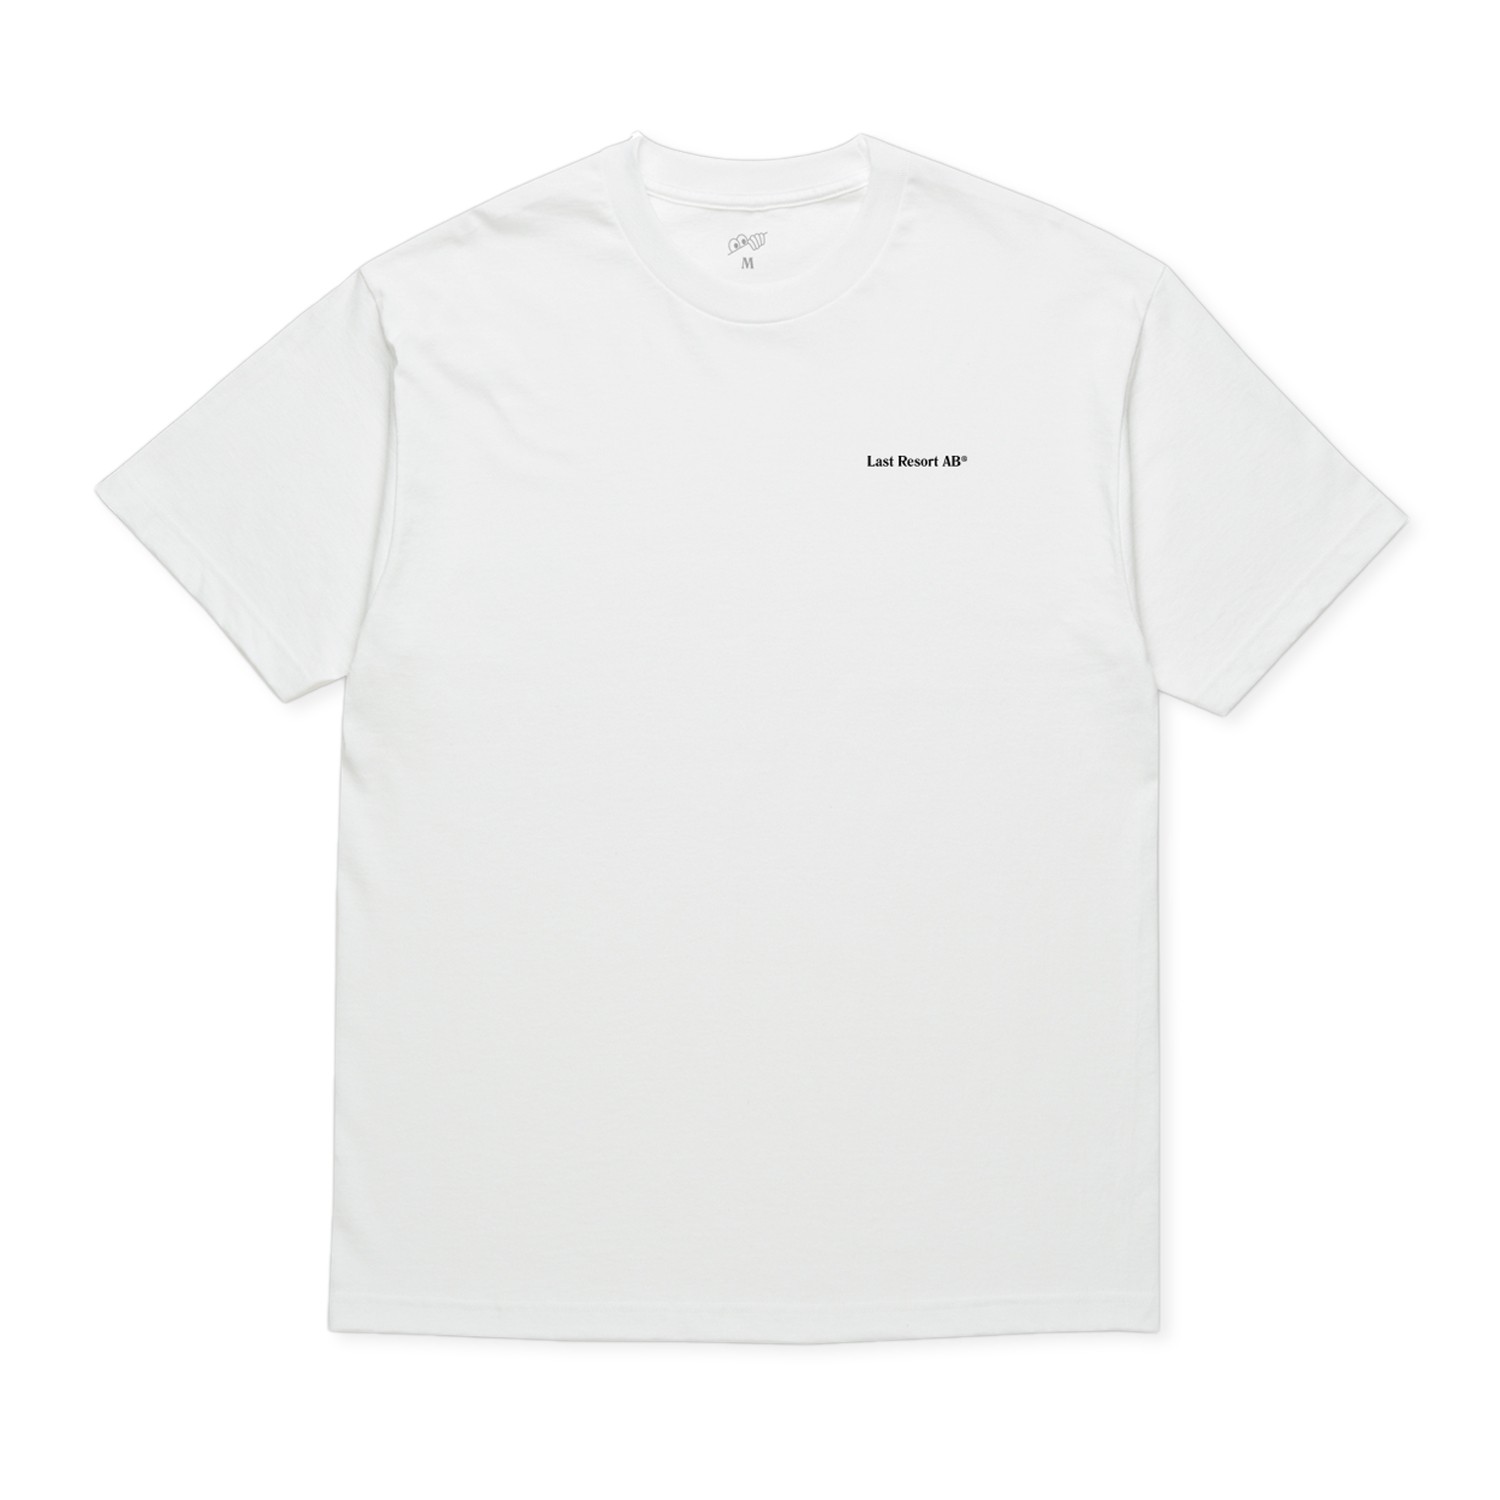 Last Resort AB World T-Shirt (White/Black) - LR-AB-WORLDTEE-WHTBLK ...